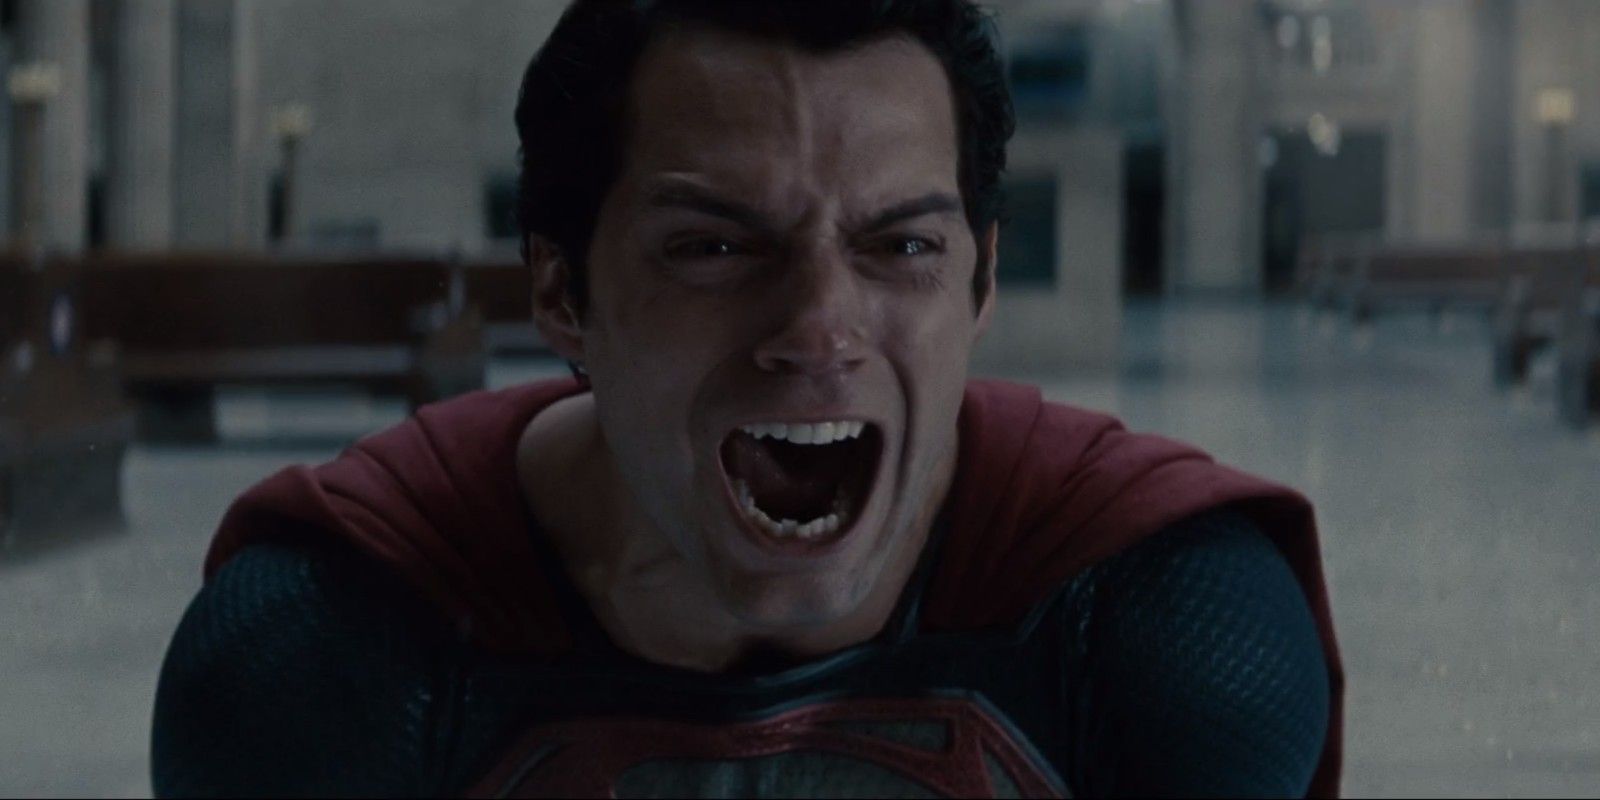 Superman Screaming In Sorrow Man Of Steel